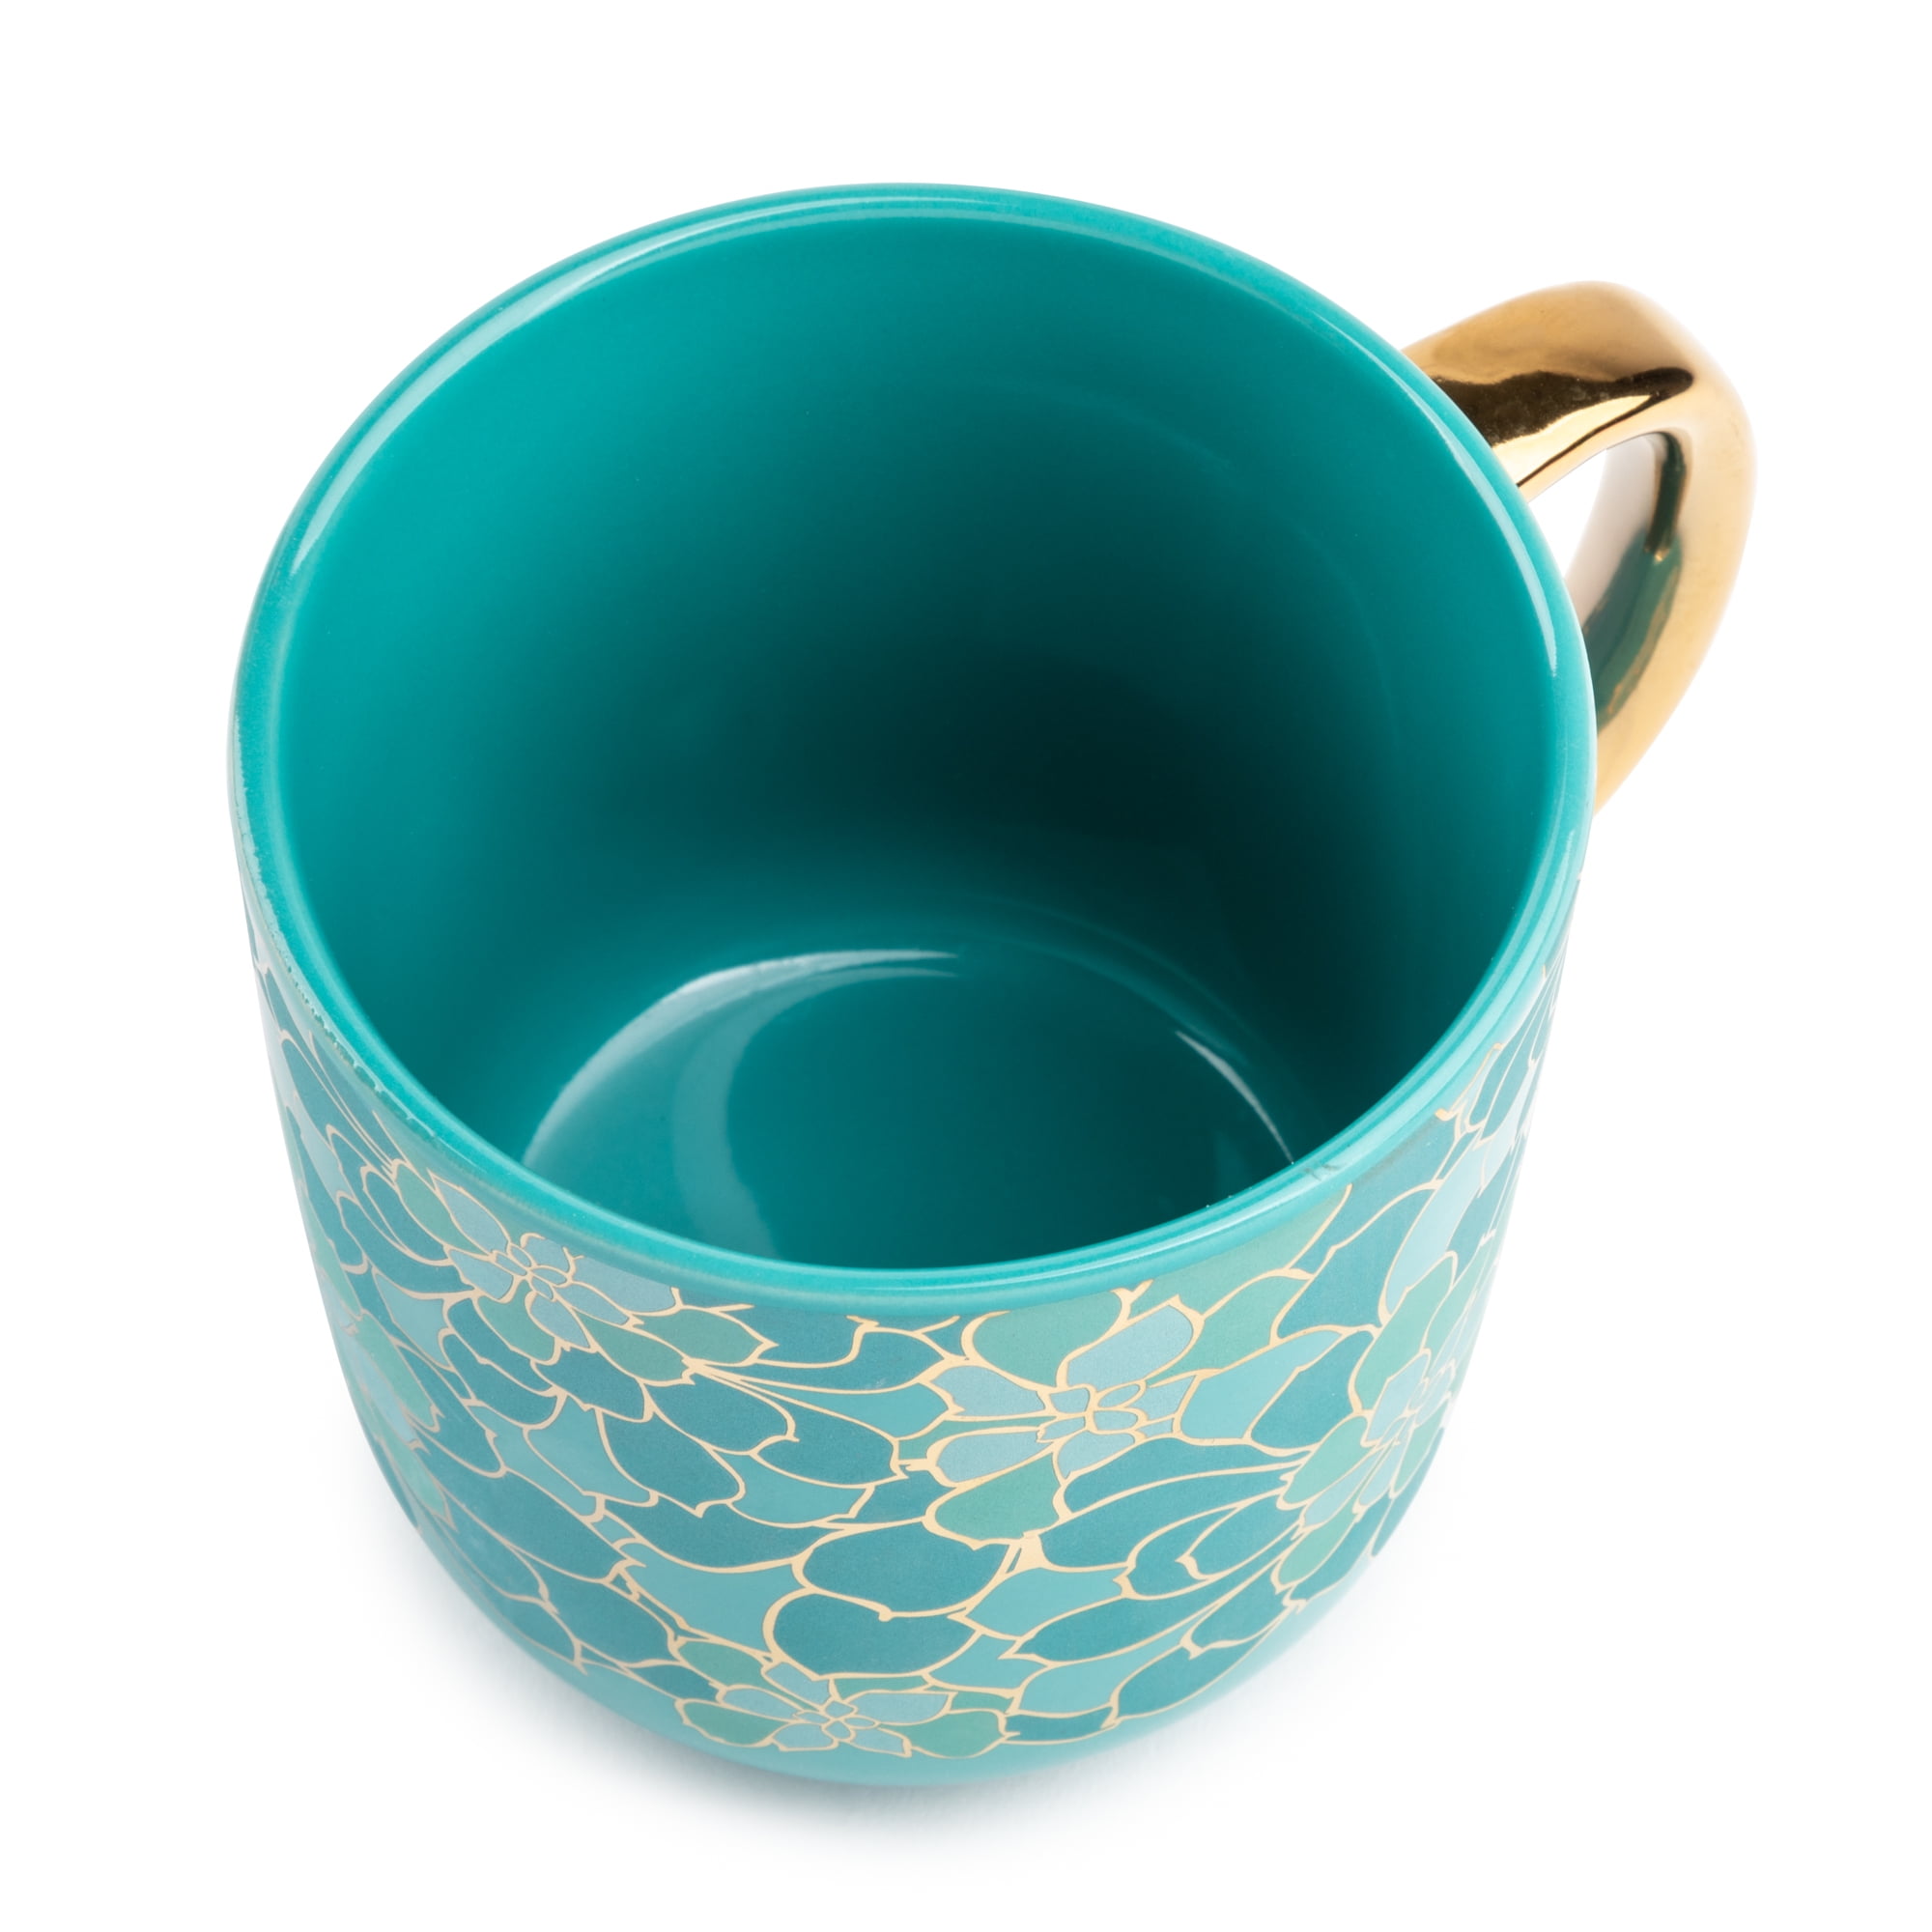 Teal coffee mug aesthetic, turquoise